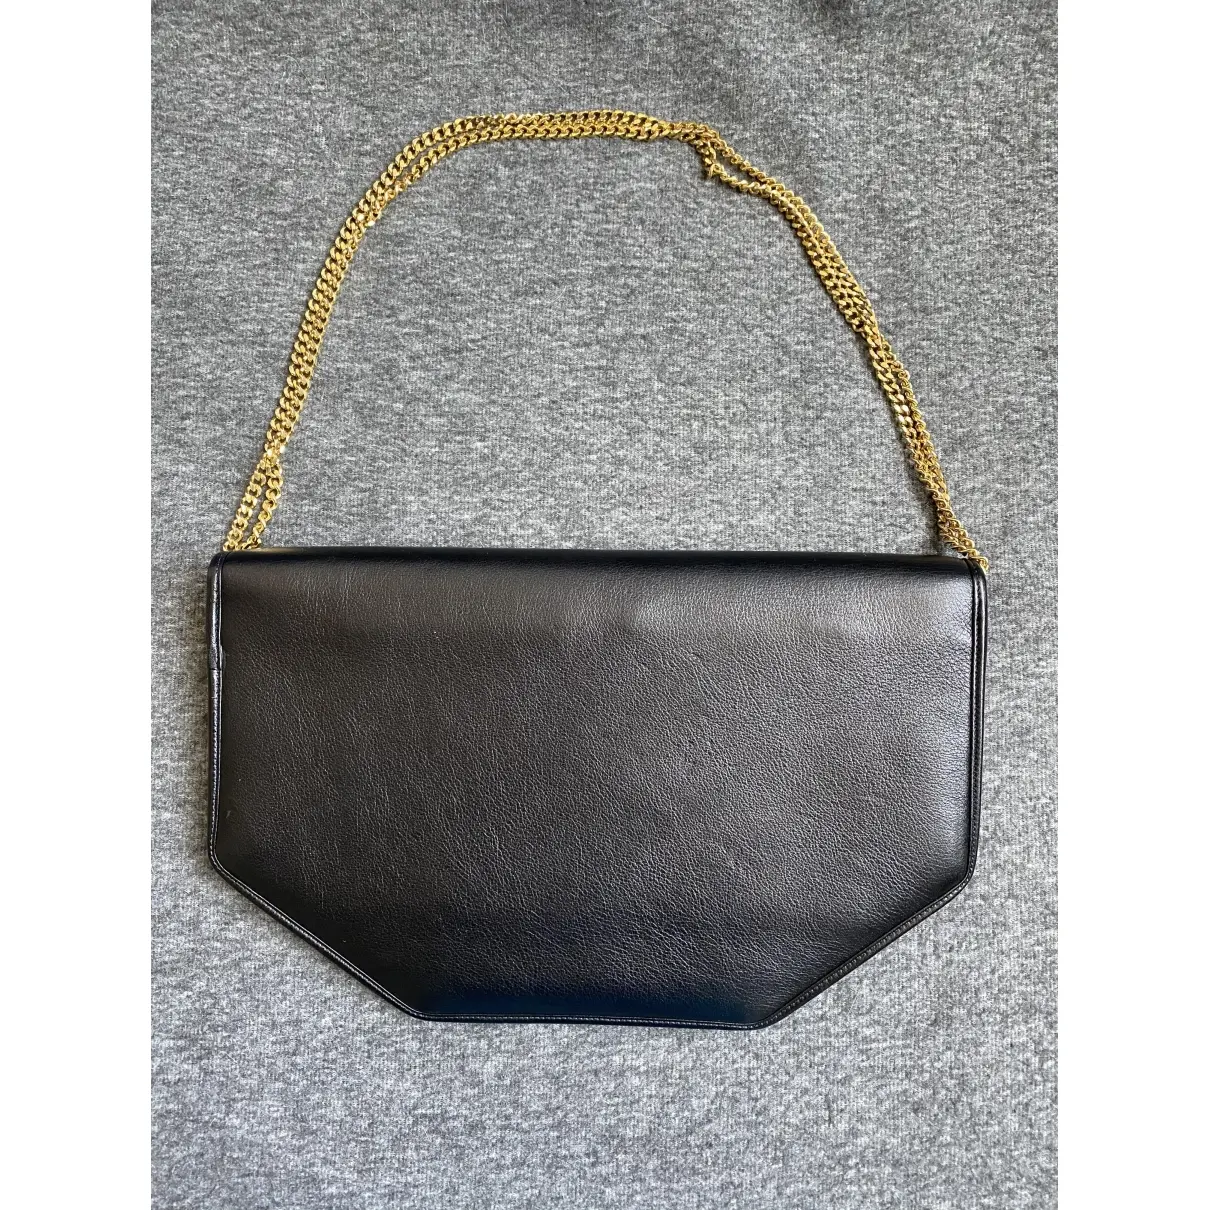 Revillon Leather handbag for sale - Vintage